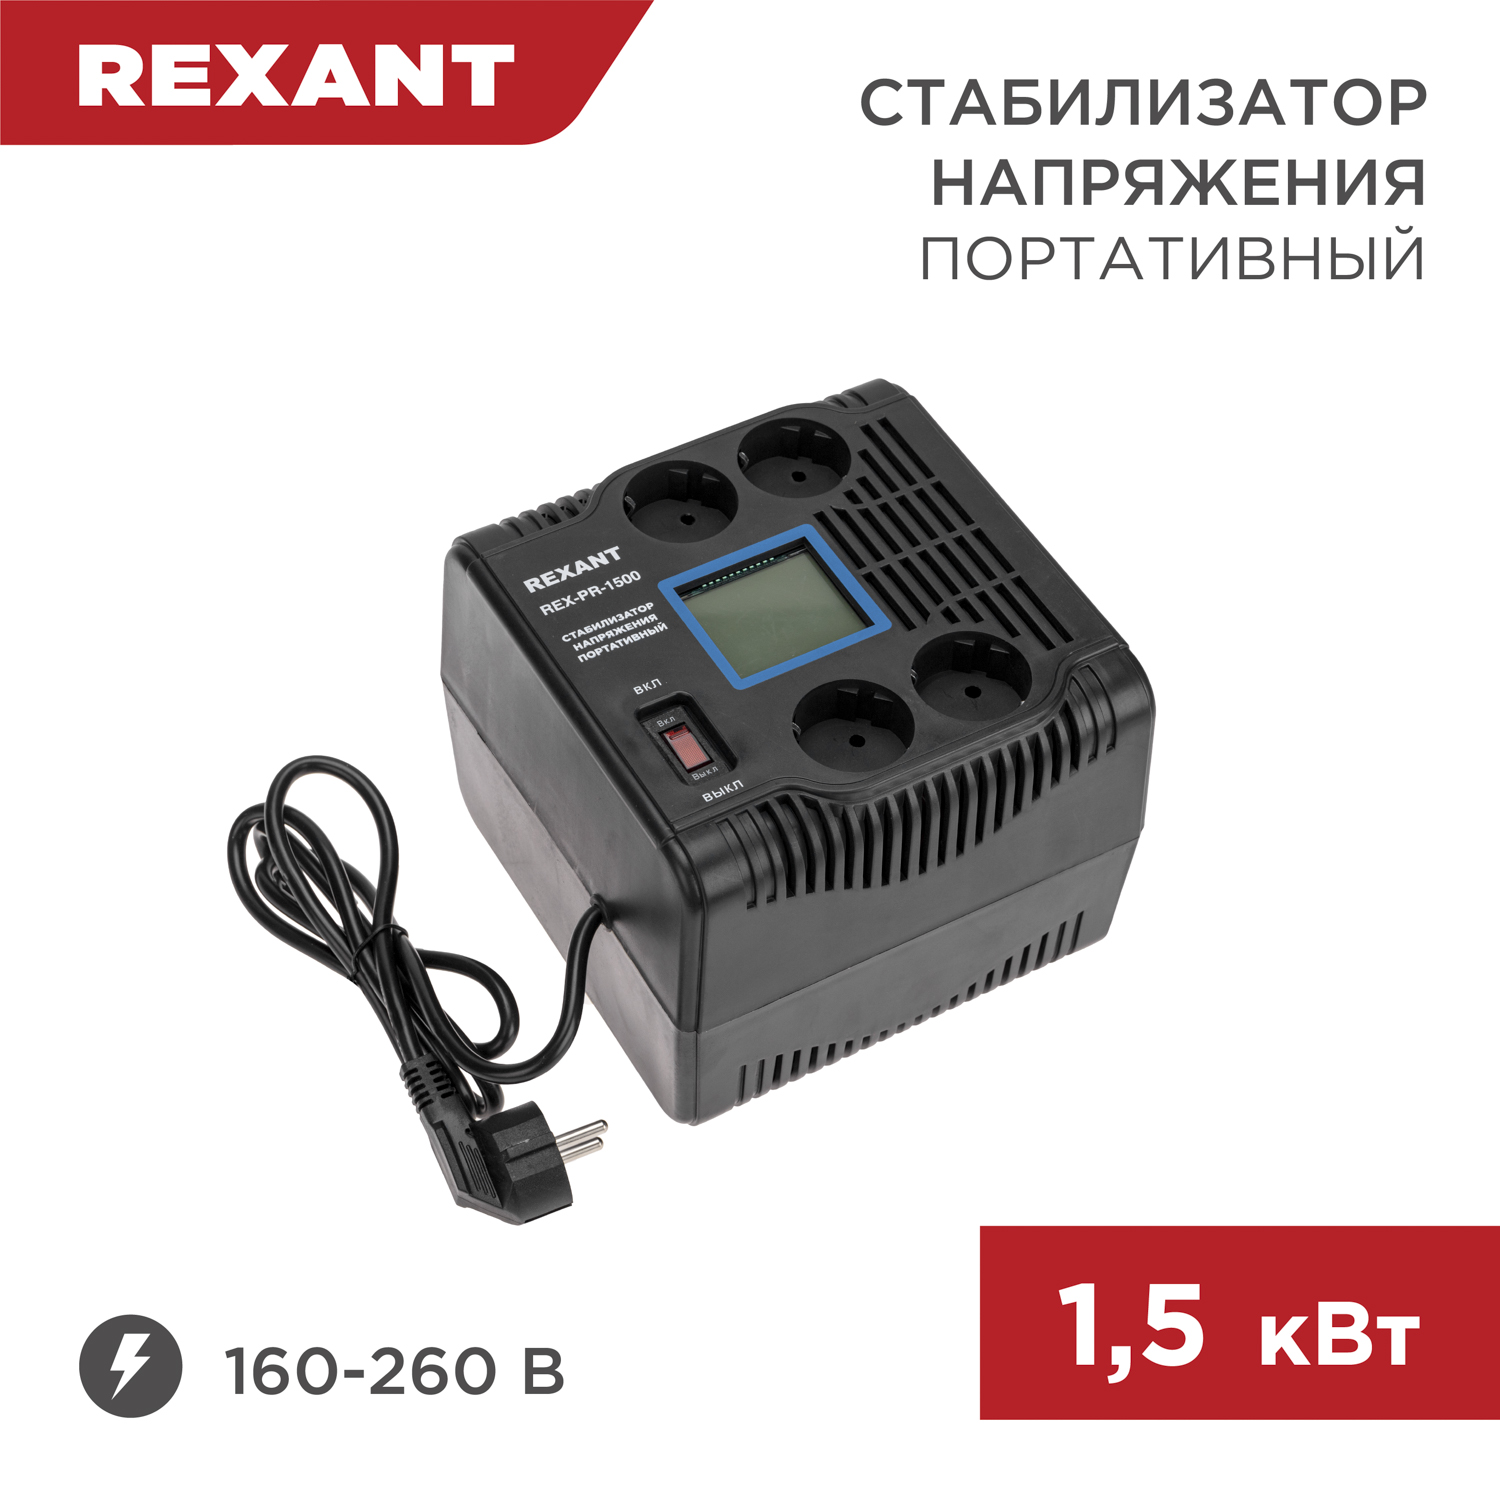 Стабилизатор напряжения портативный REXANT REX-PR-1500 11-5031 портативный индикатор напряжения uni t